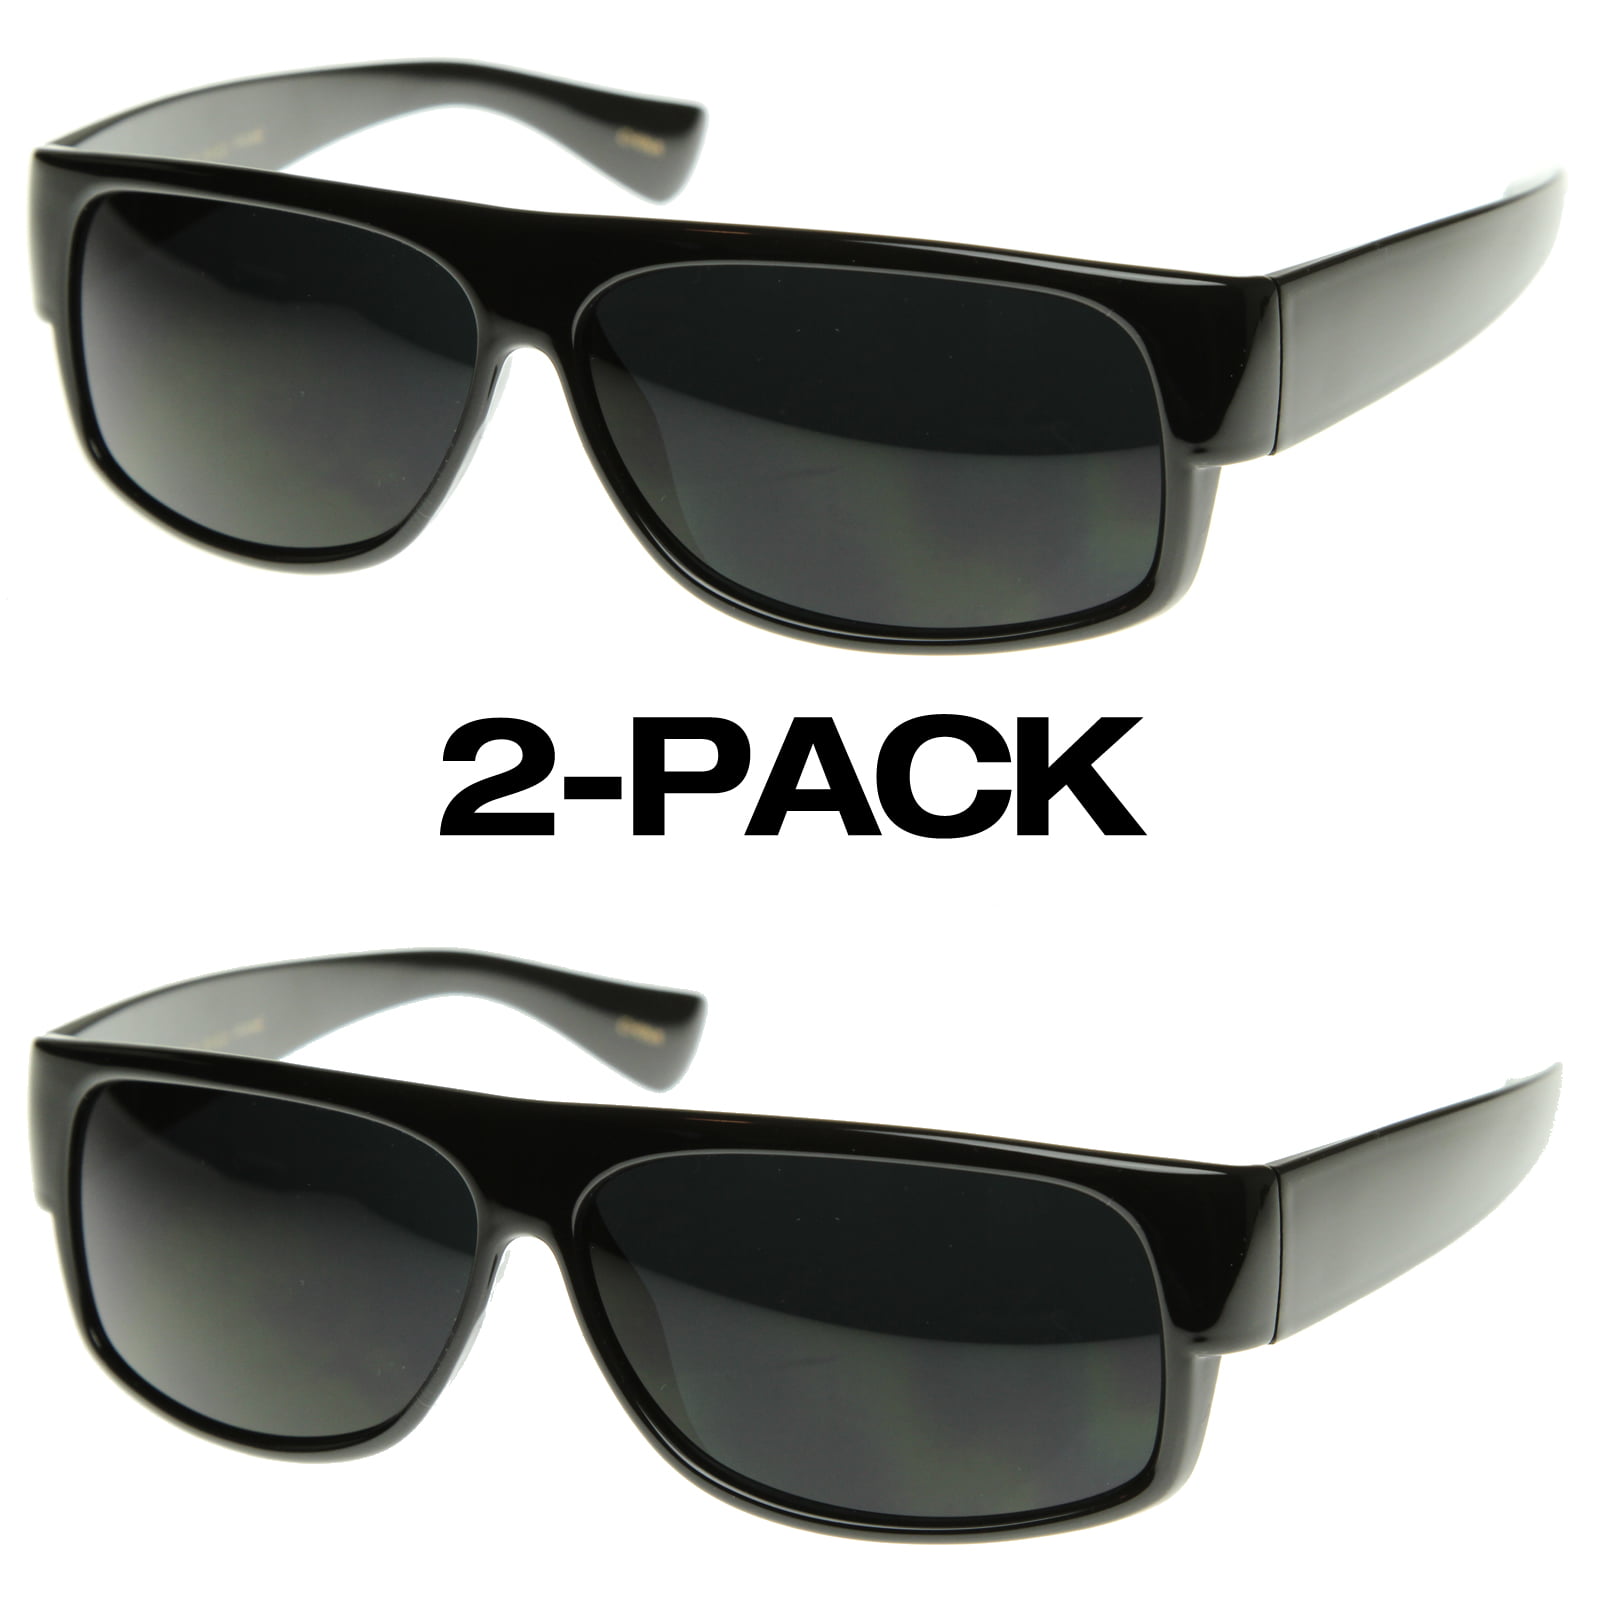 Original OG Mad Dogger Locs Shades Sunglasses W Super Dark Lens Black for sale online 